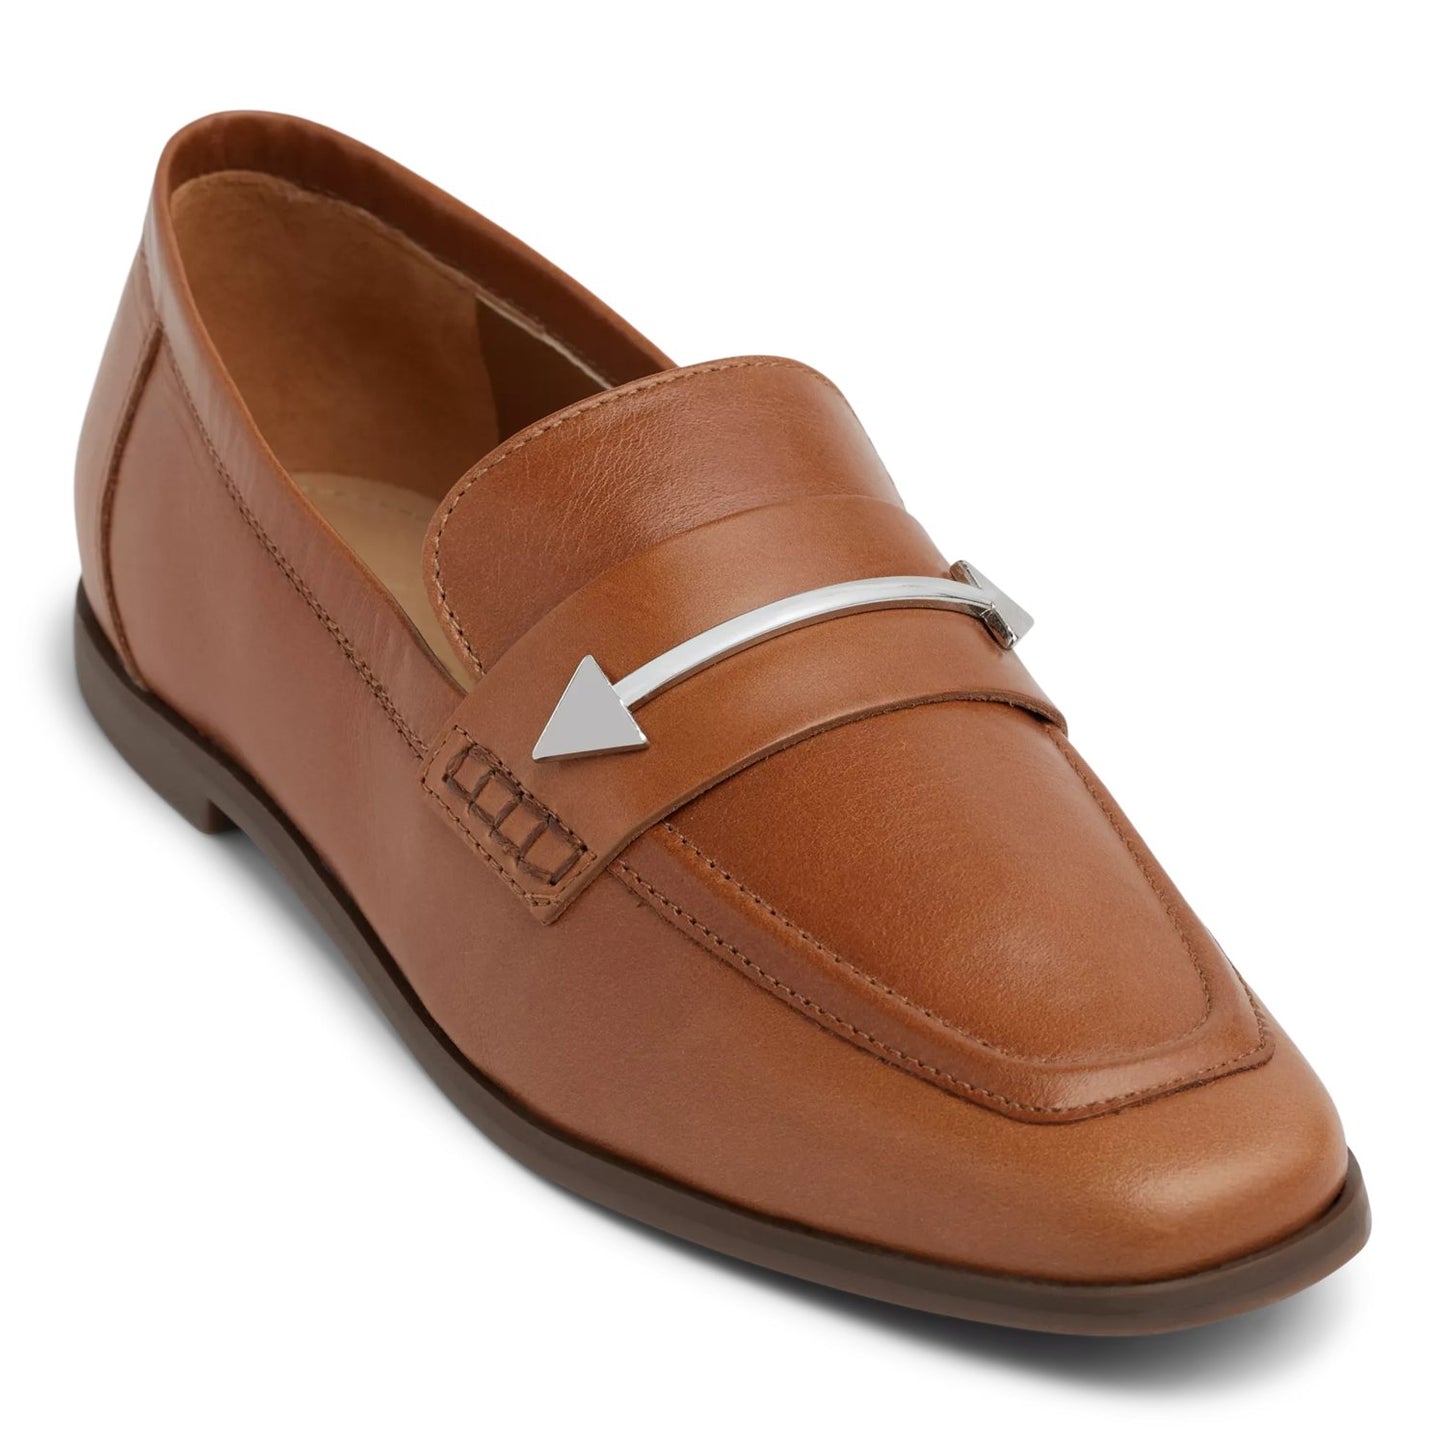 Desmond Loafer Shoes